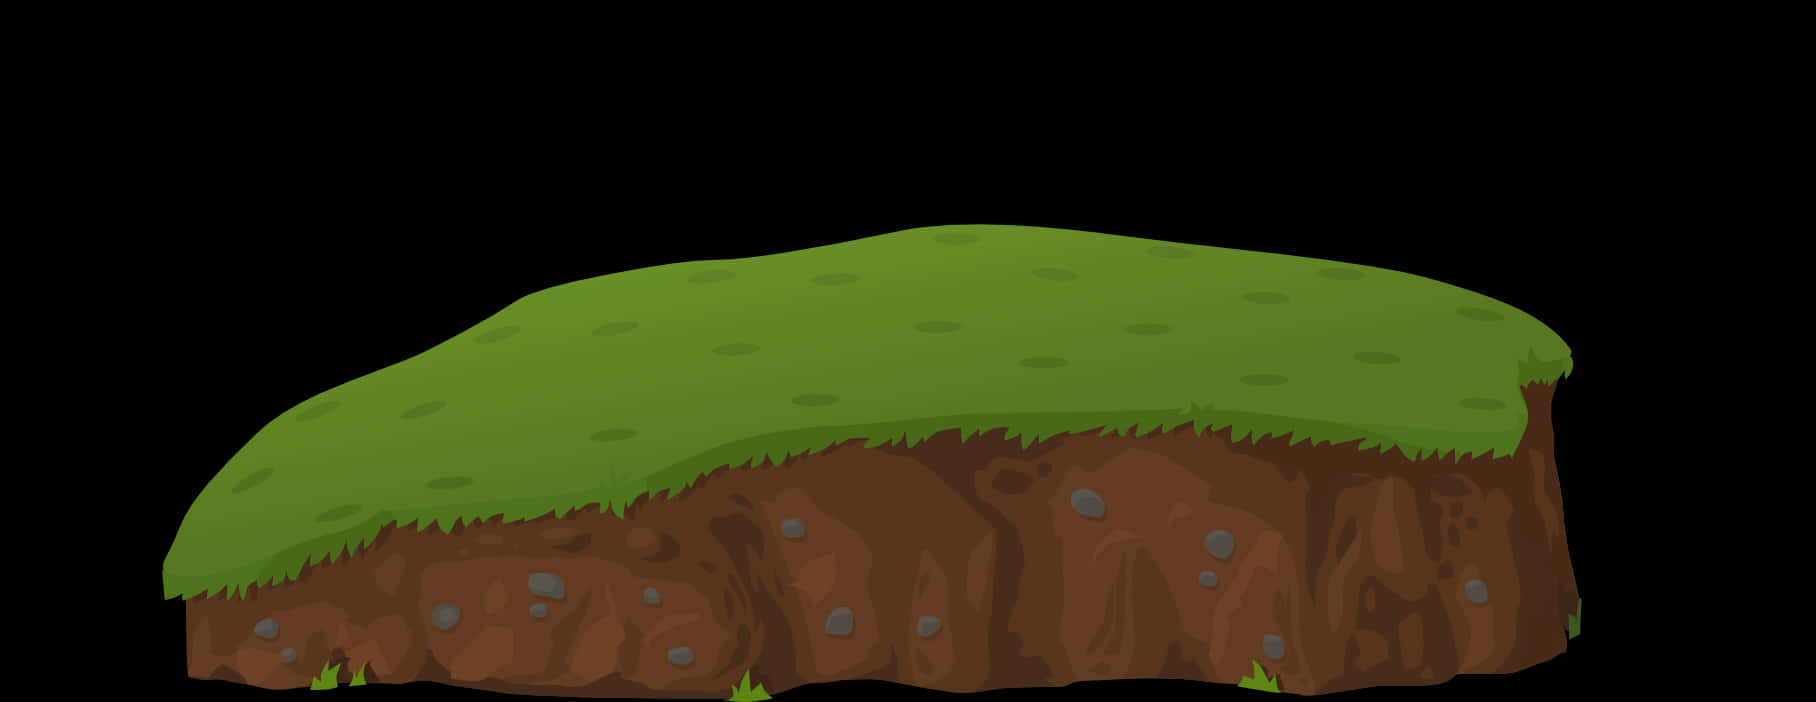 Mound Of Dirt Soil